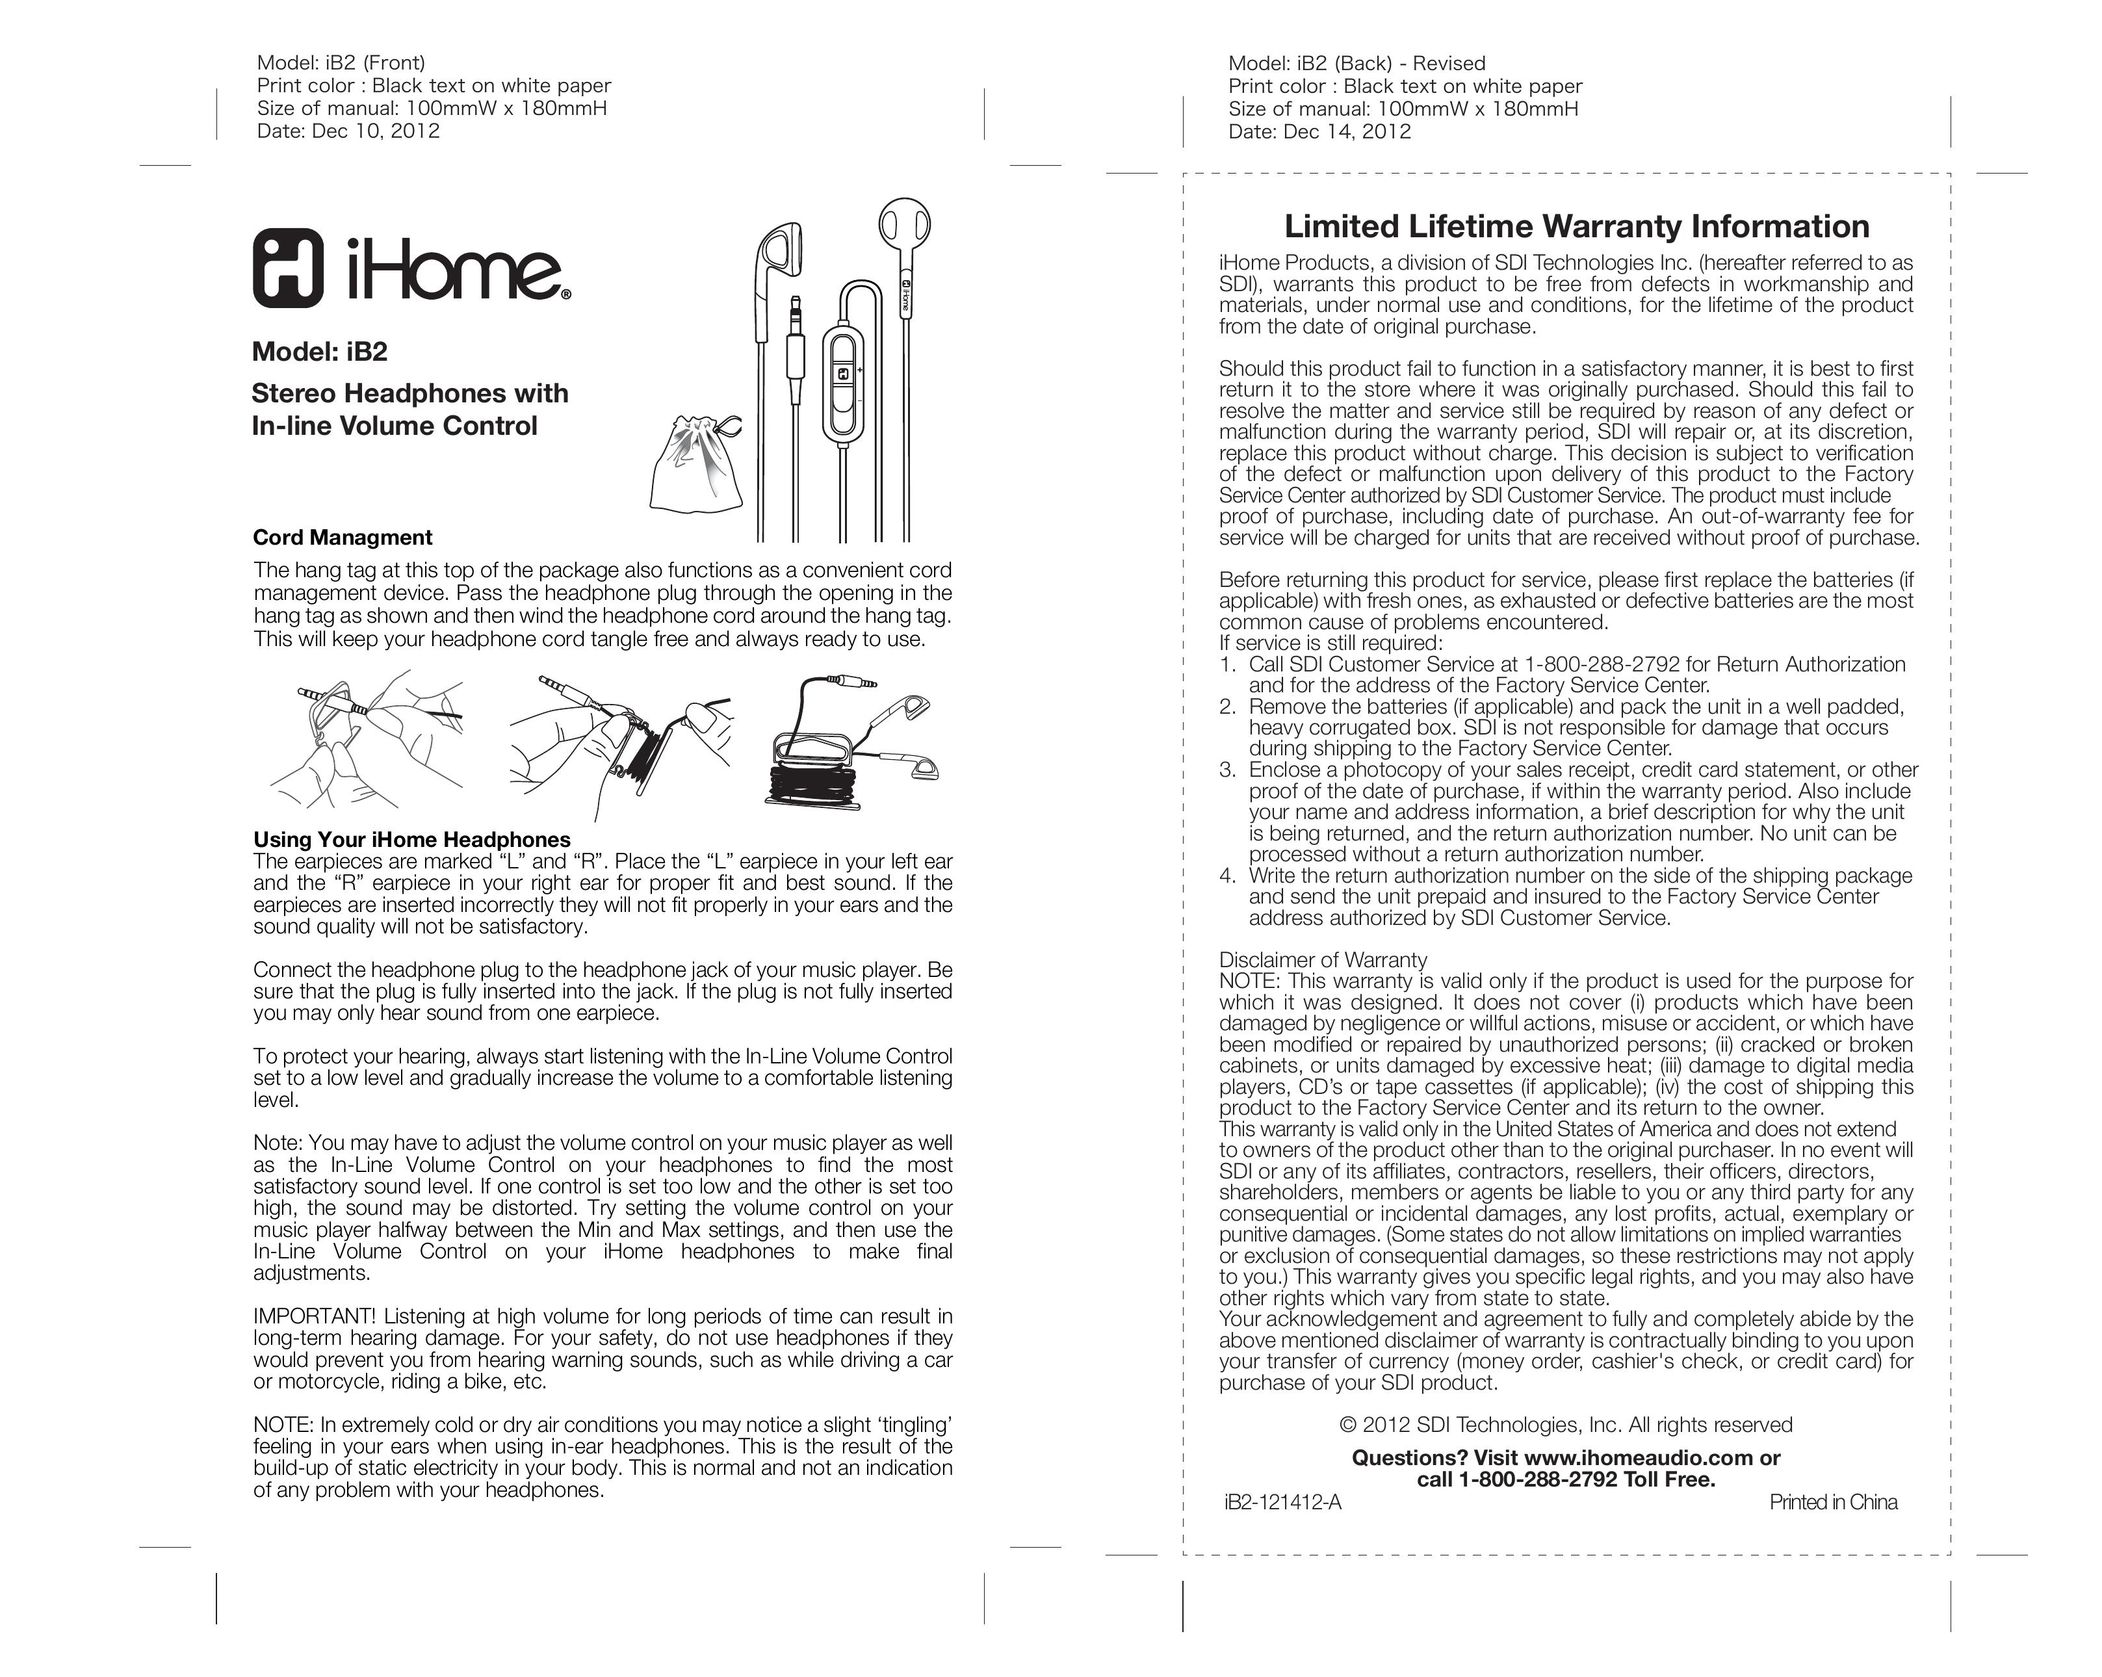 iHome iB2 Headphones User Manual